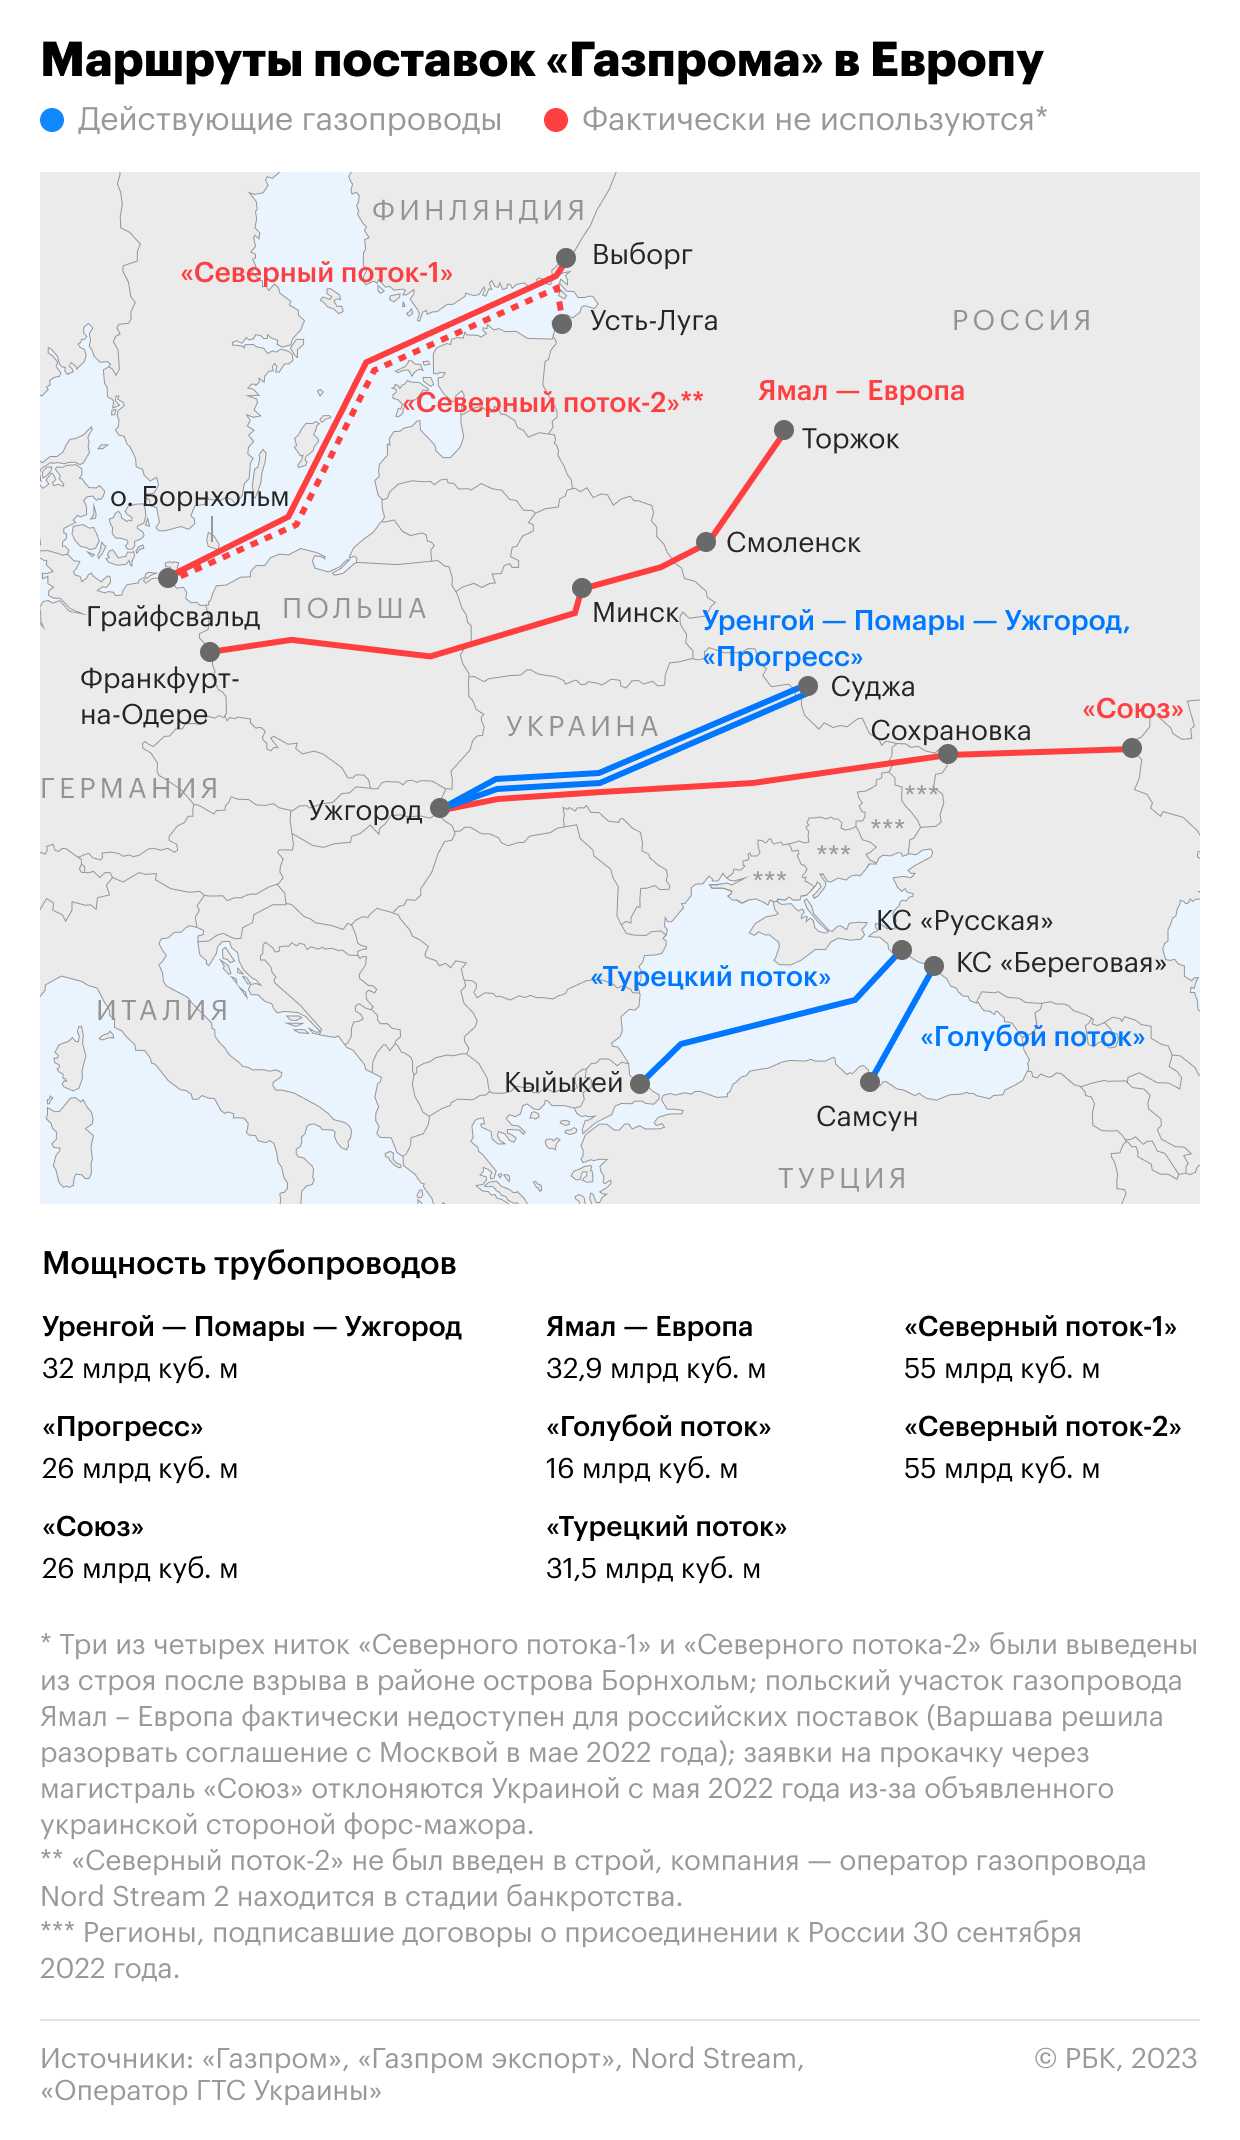 Bild узнал о найденных на «связанной» со взрывами Nord Stream яхте уликах